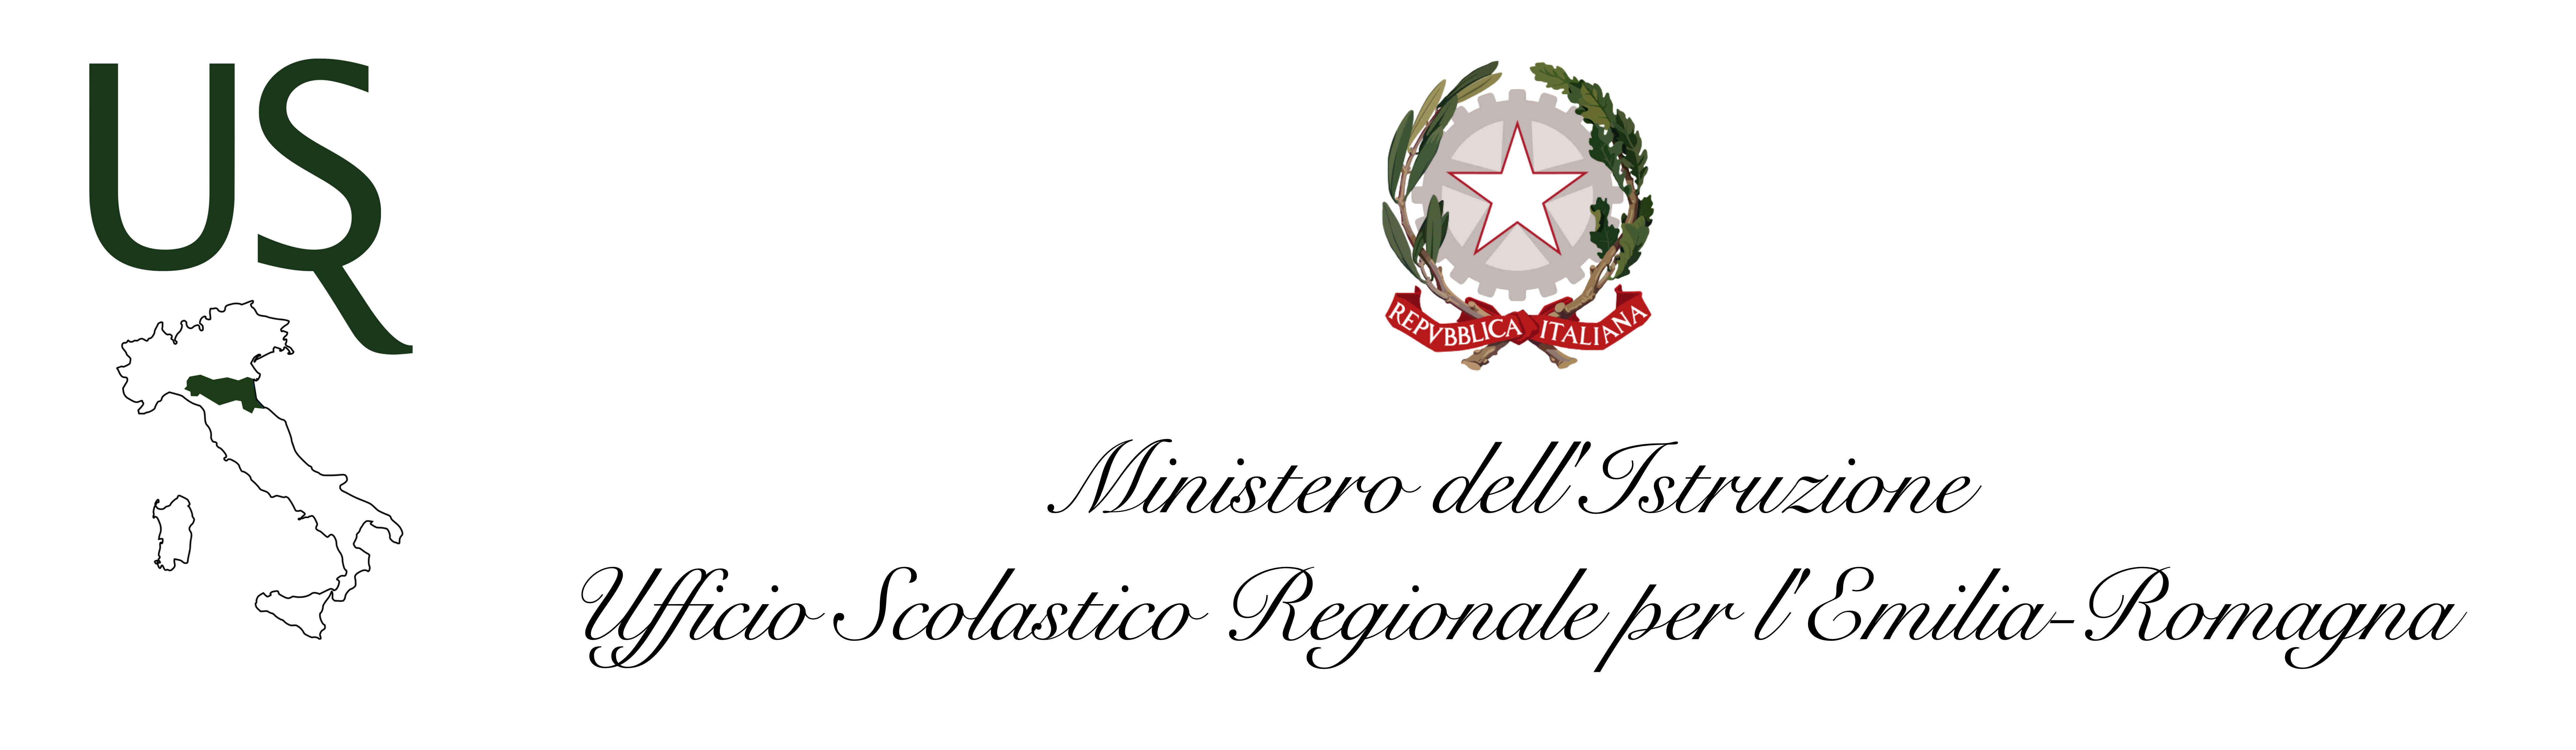 USR-Emilia Romagna 2021